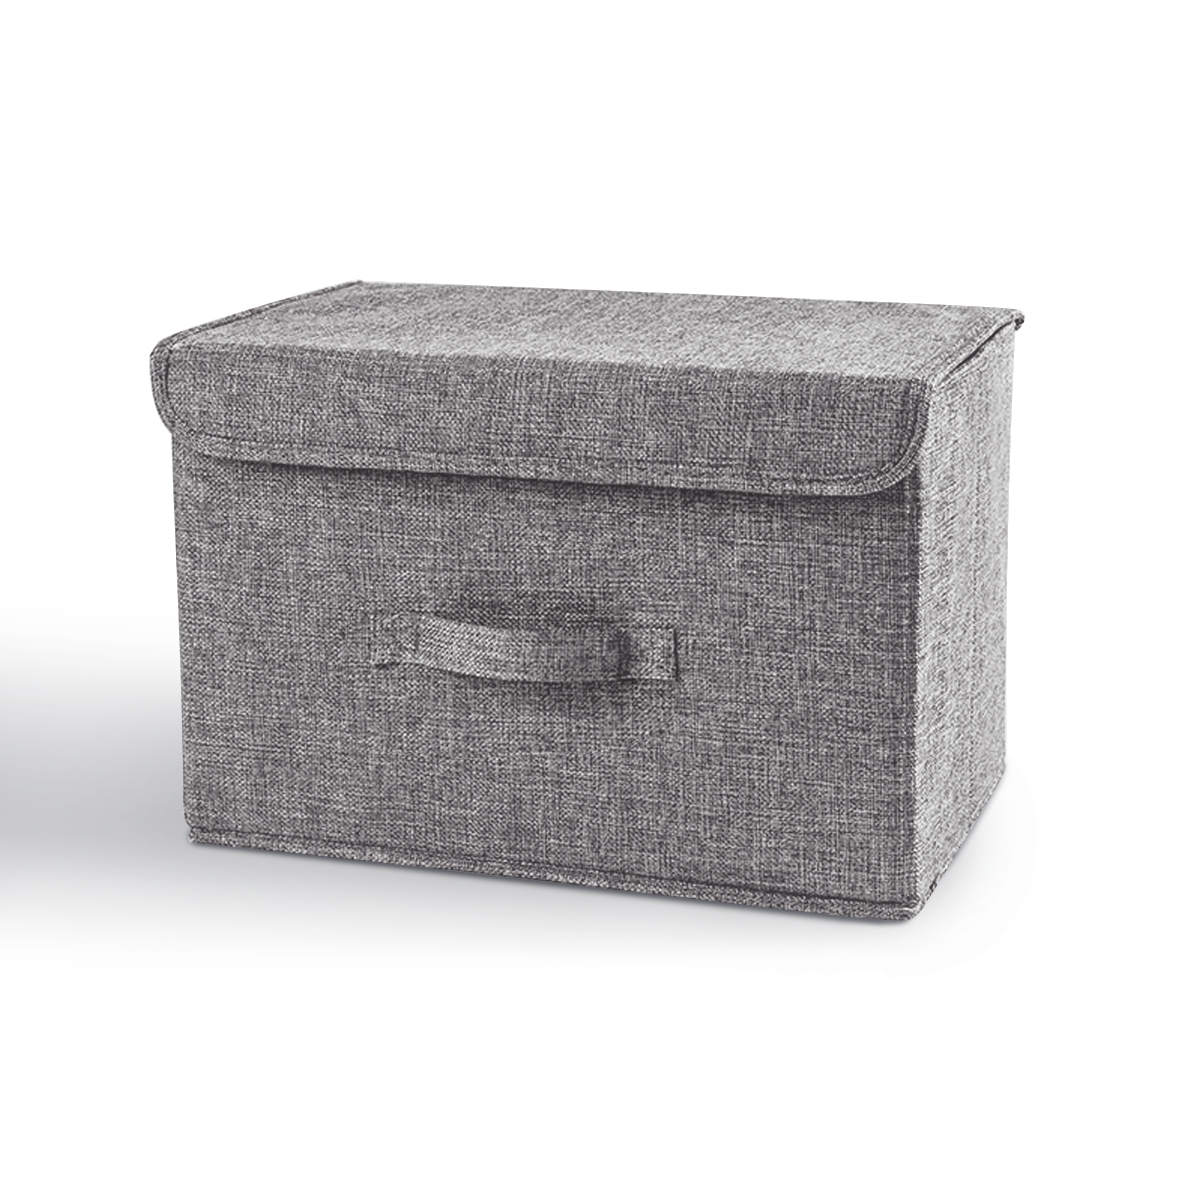 Ящик для хранения с крышкой MVM тканевый серый 250x250x380 TH-07 M GRAY